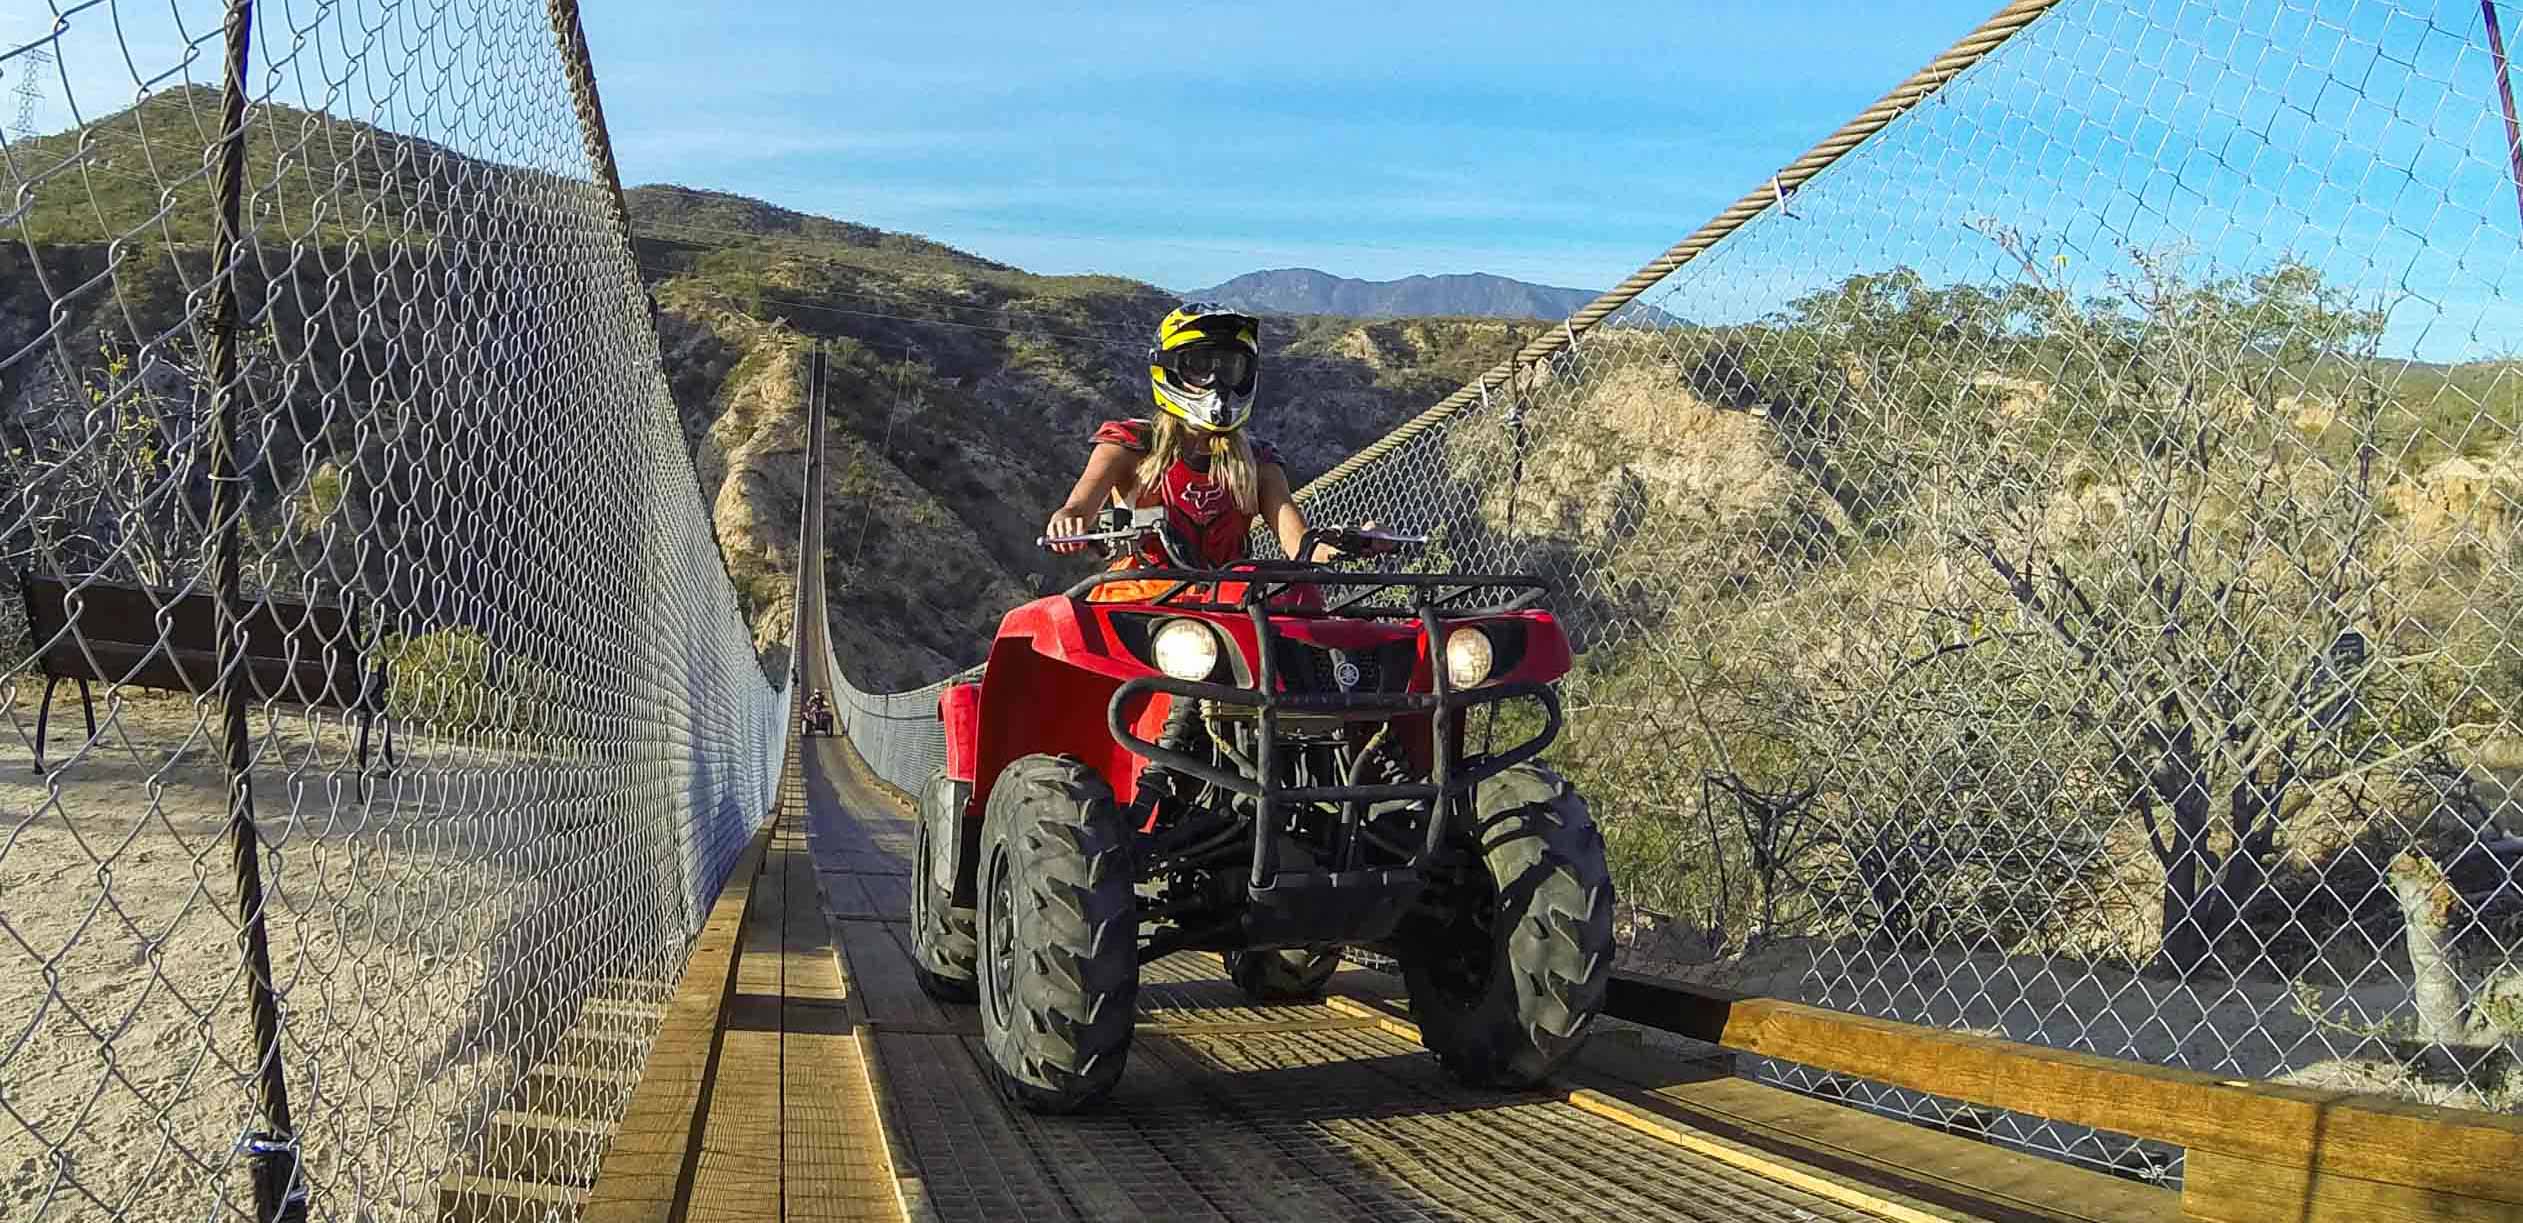 Wild Canyon ATV